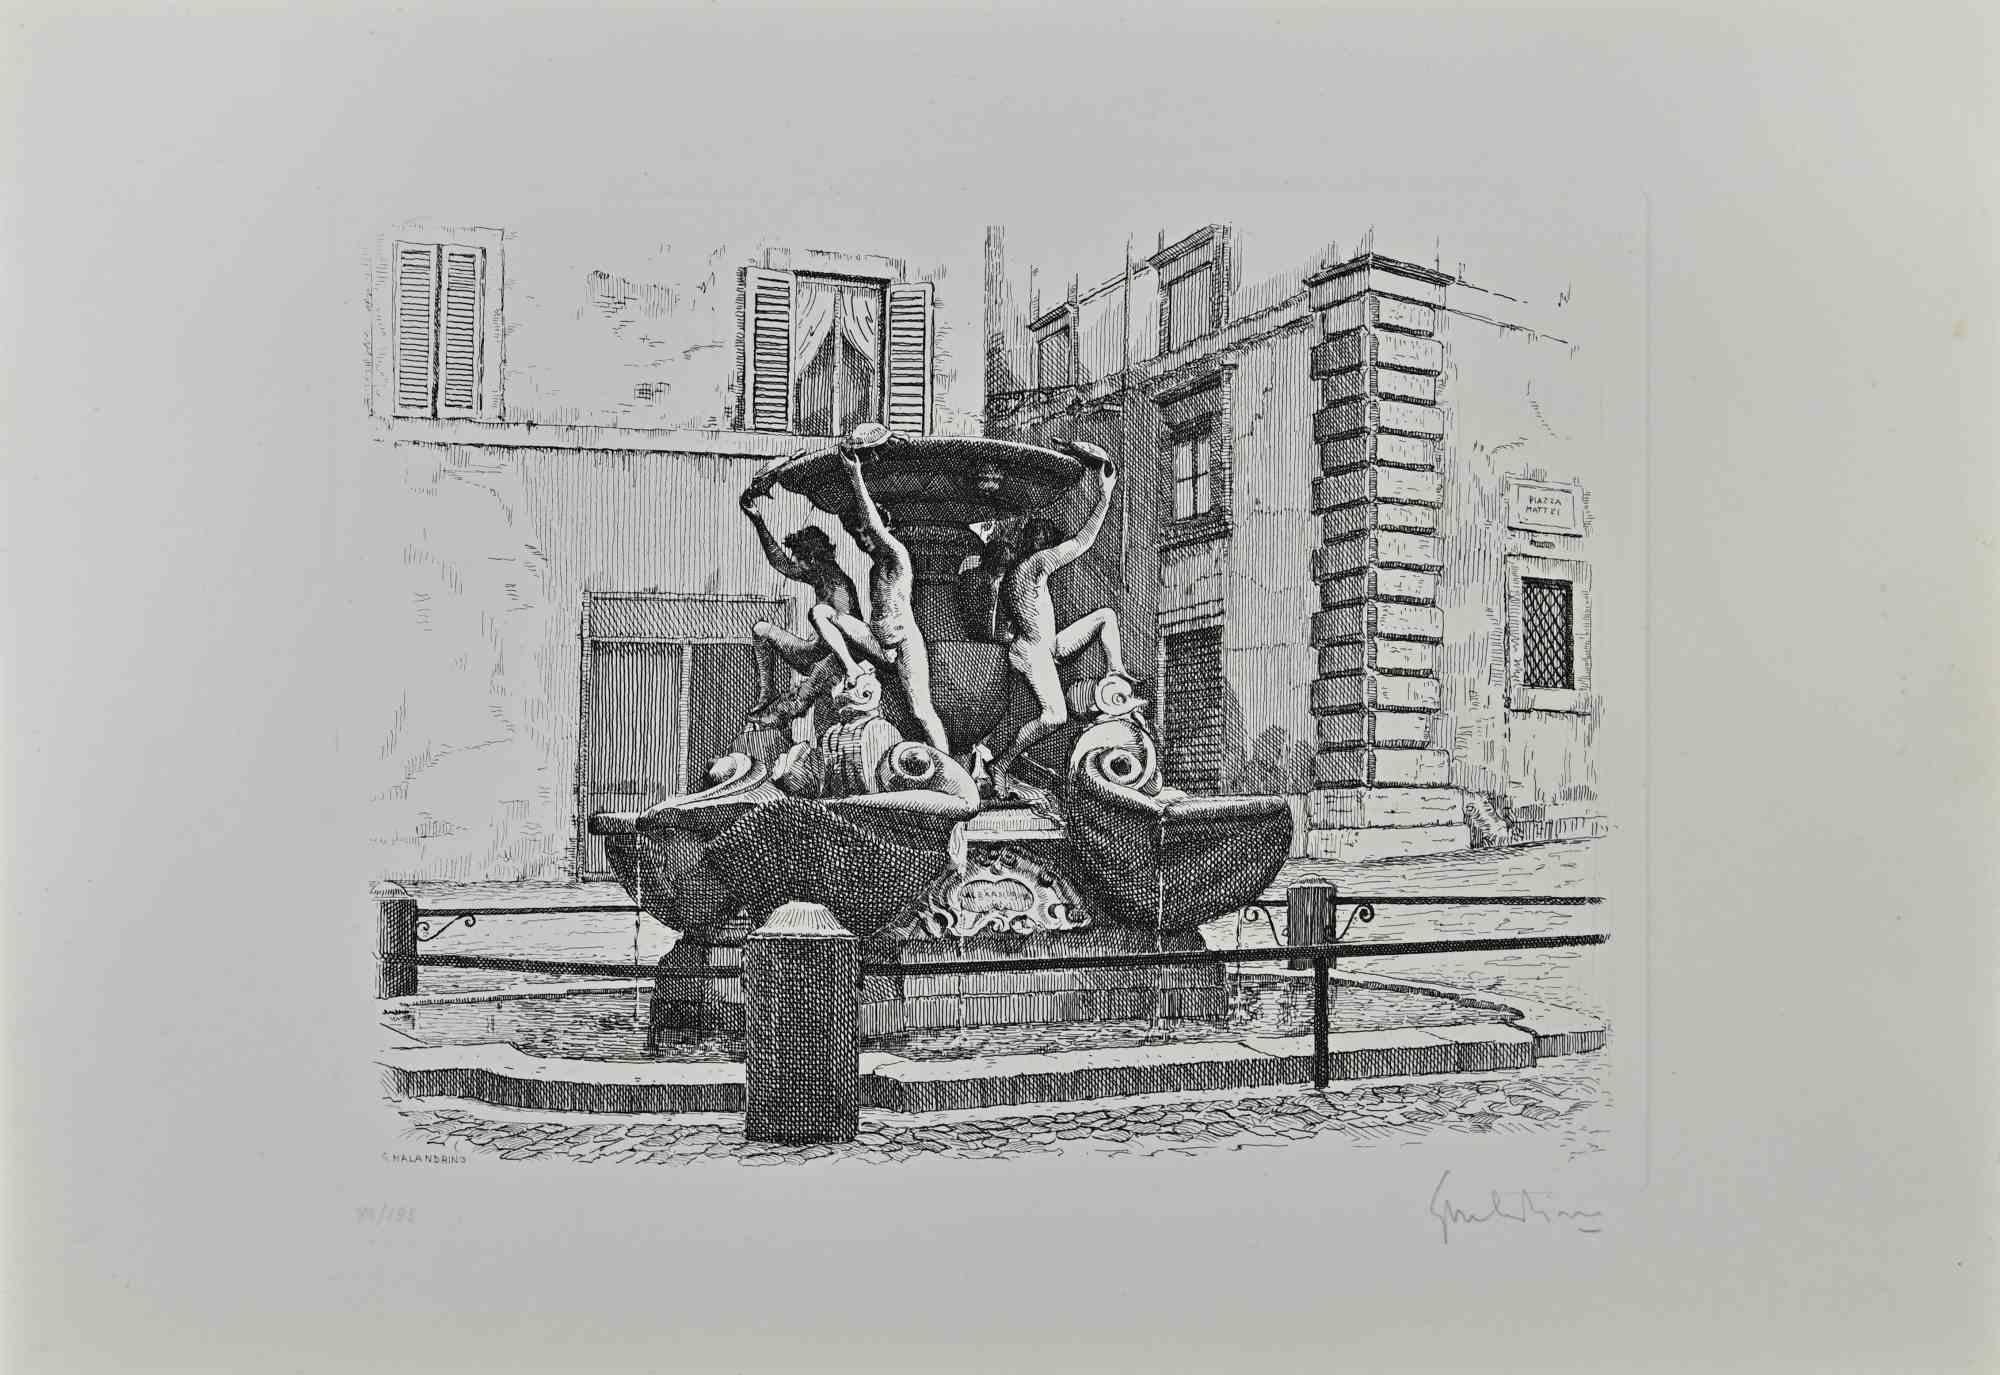 Der Schildkrötenbrunnen - Rom ist ein Originalkunstwerk von Giuseppe Malandrino.

Originaldruck in Ätztechnik.

Vom Künstler in der rechten unteren Ecke mit Bleistift handsigniert.

Nummerierte Auflage von 99 Exemplaren.

Gute Bedingungen. 

Dieses